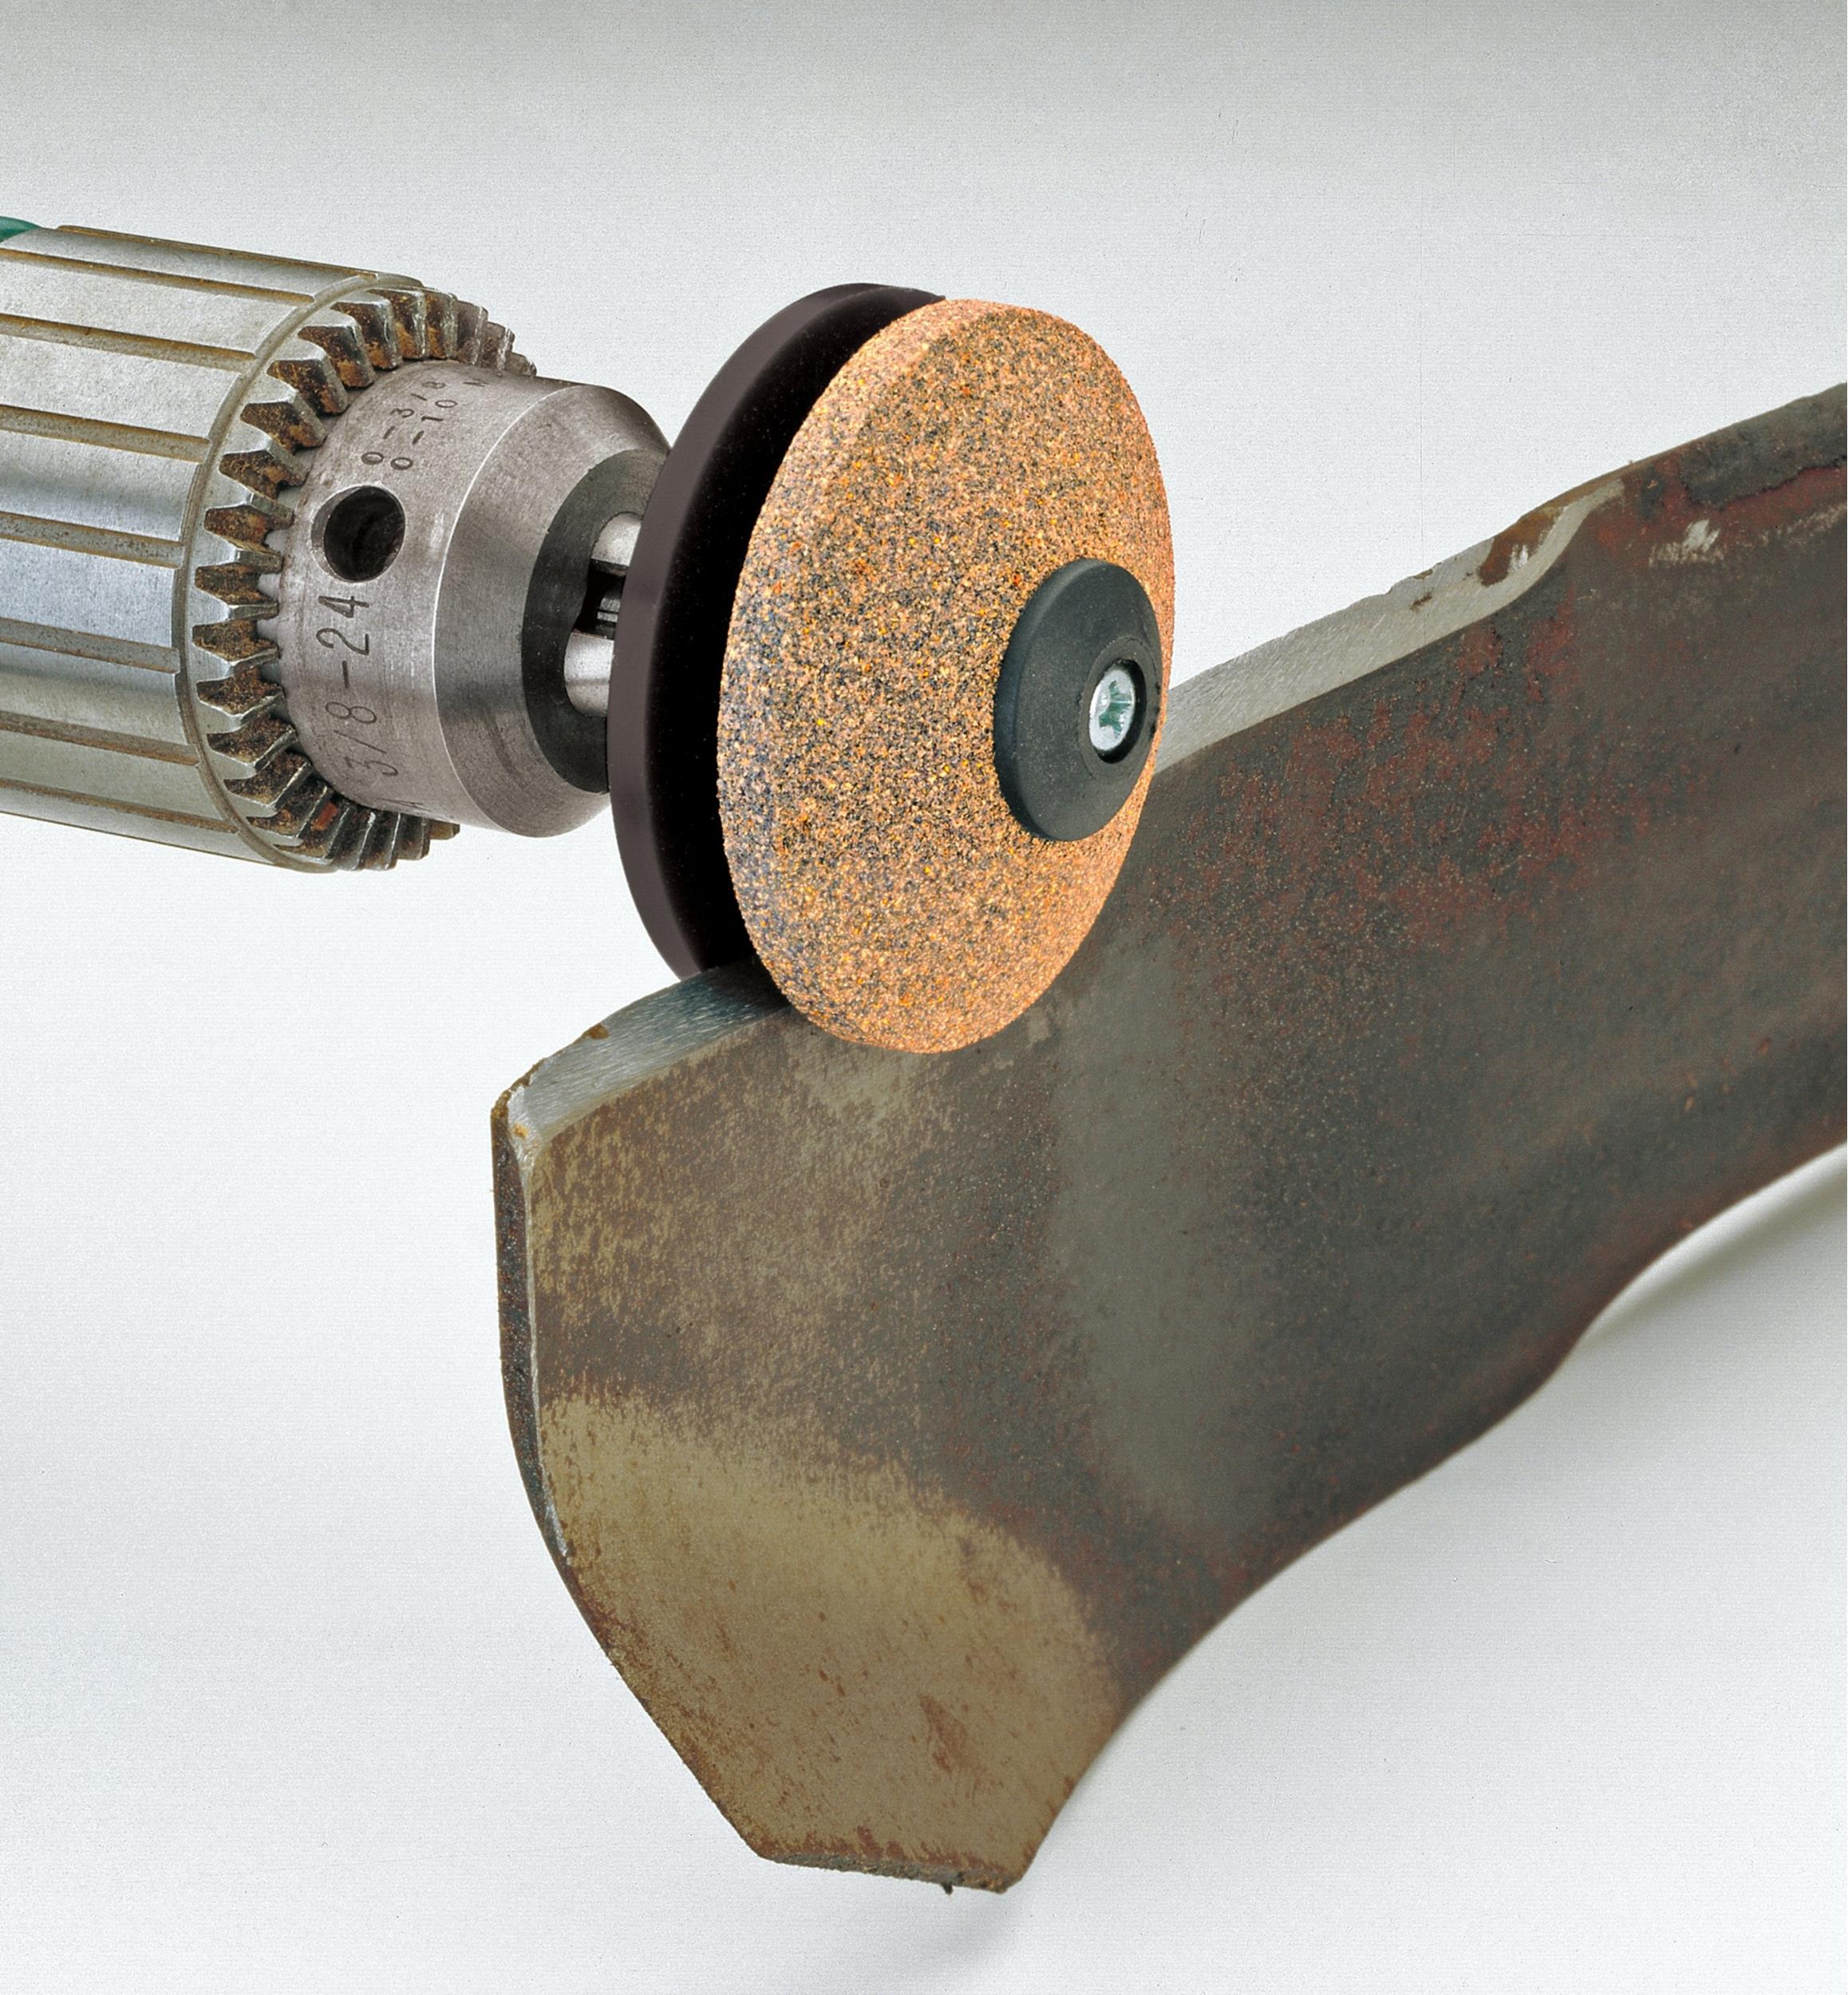 Multi-sharp r305 rotary mower tool sharpener